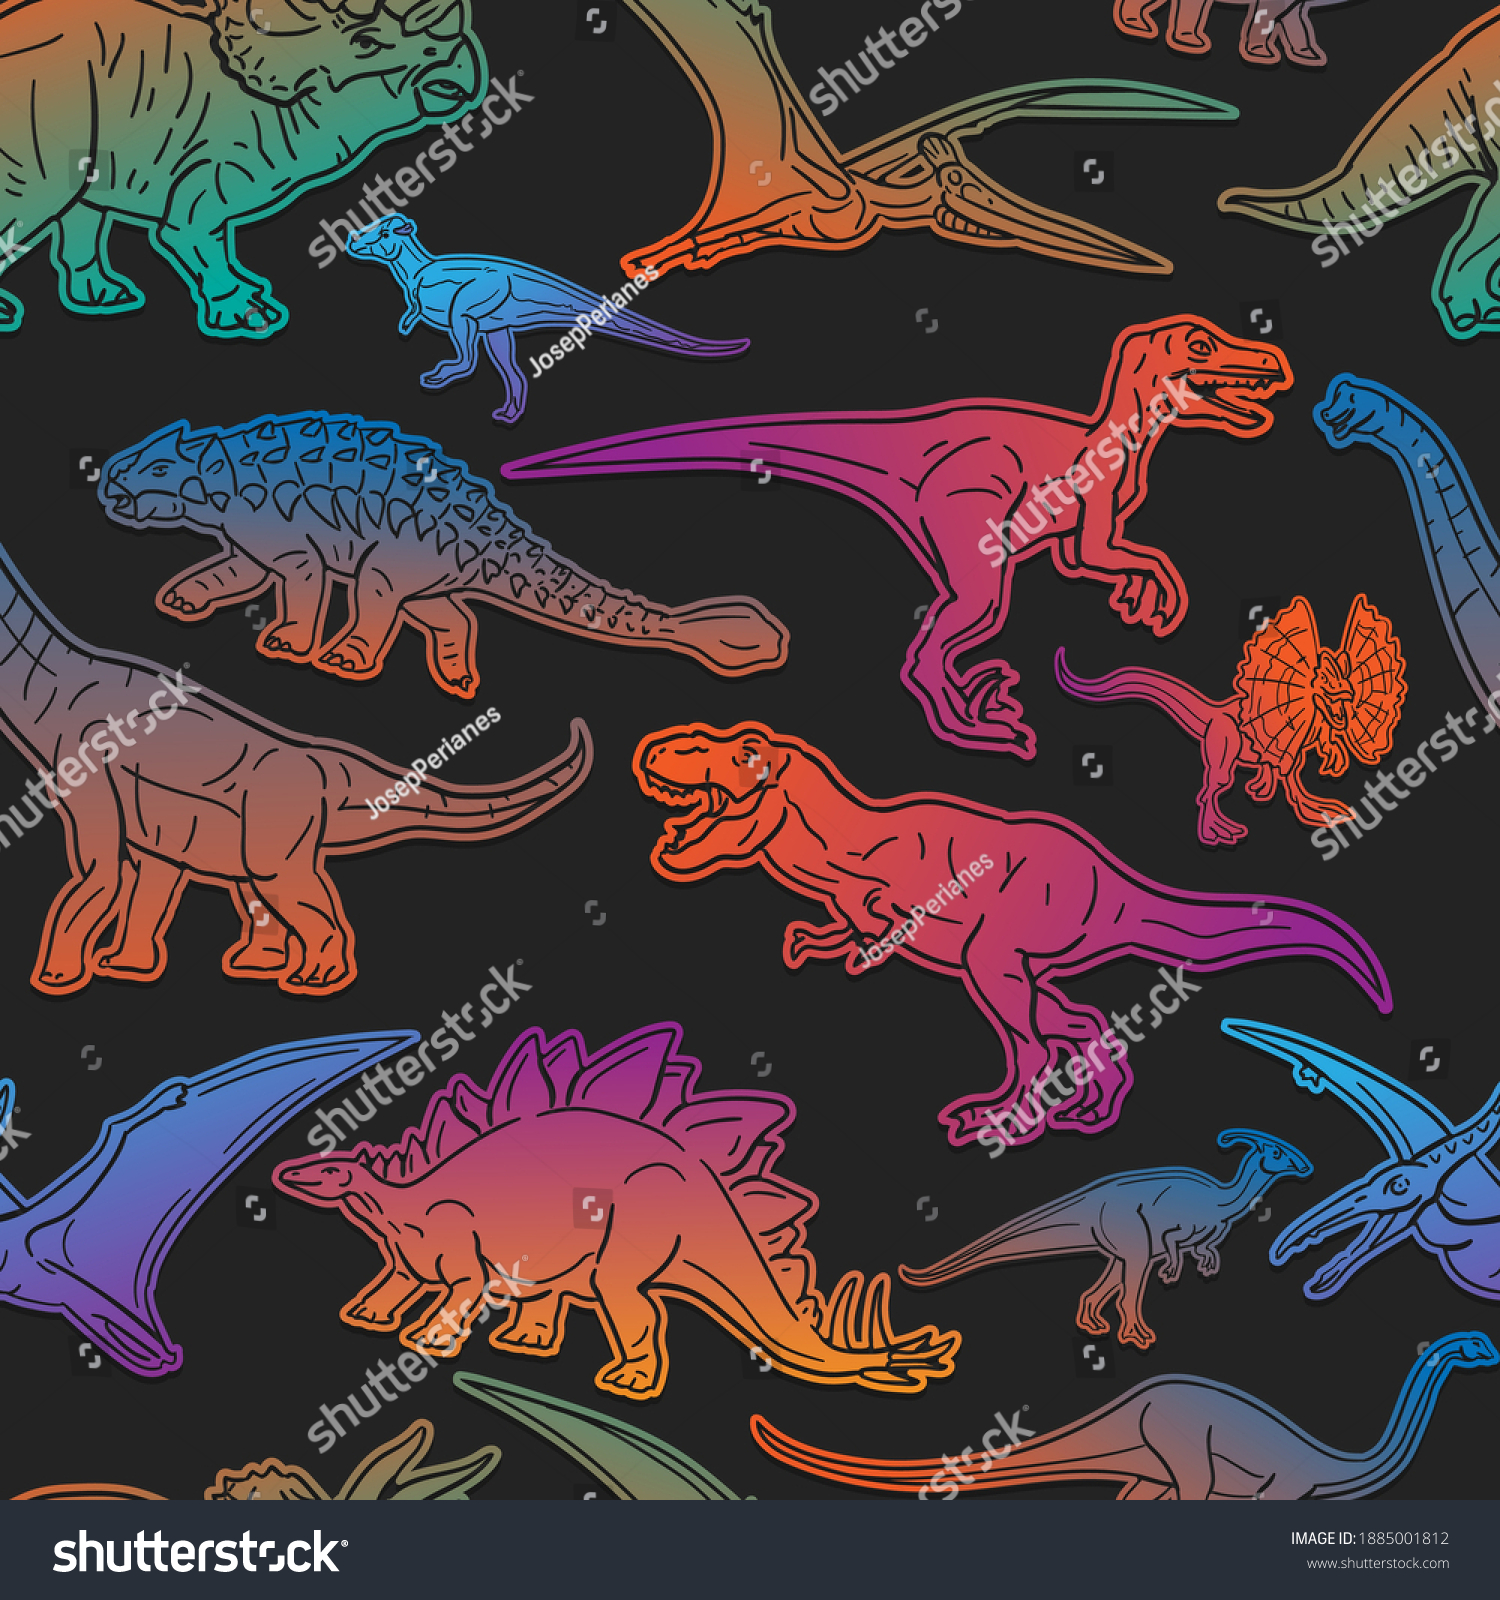 恐竜の絵文字柄 ジュラ紀の動物のシームレスな背景シンボル シルエット絵文字の古いデザインベクター画像 のベクター画像素材 ロイヤリティフリー